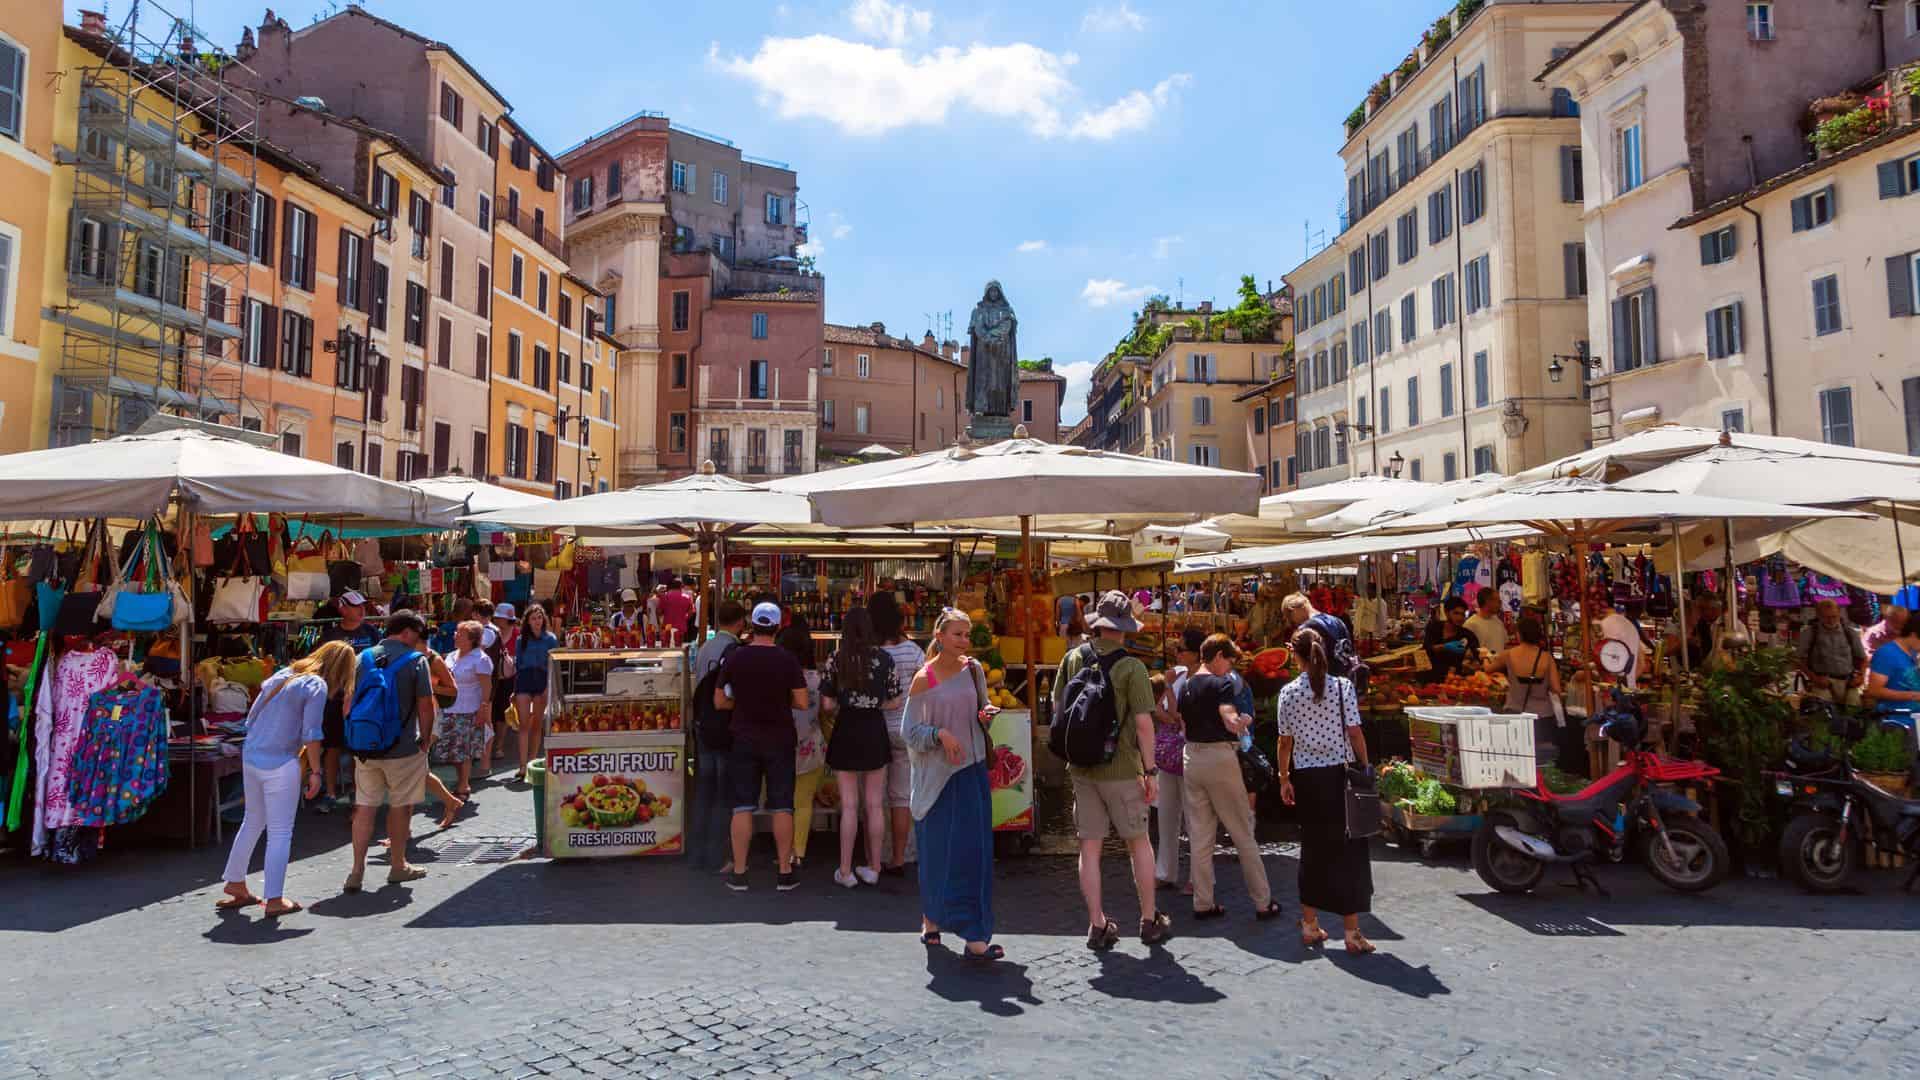 Market on the Campo de Fiori in Rome, Italy